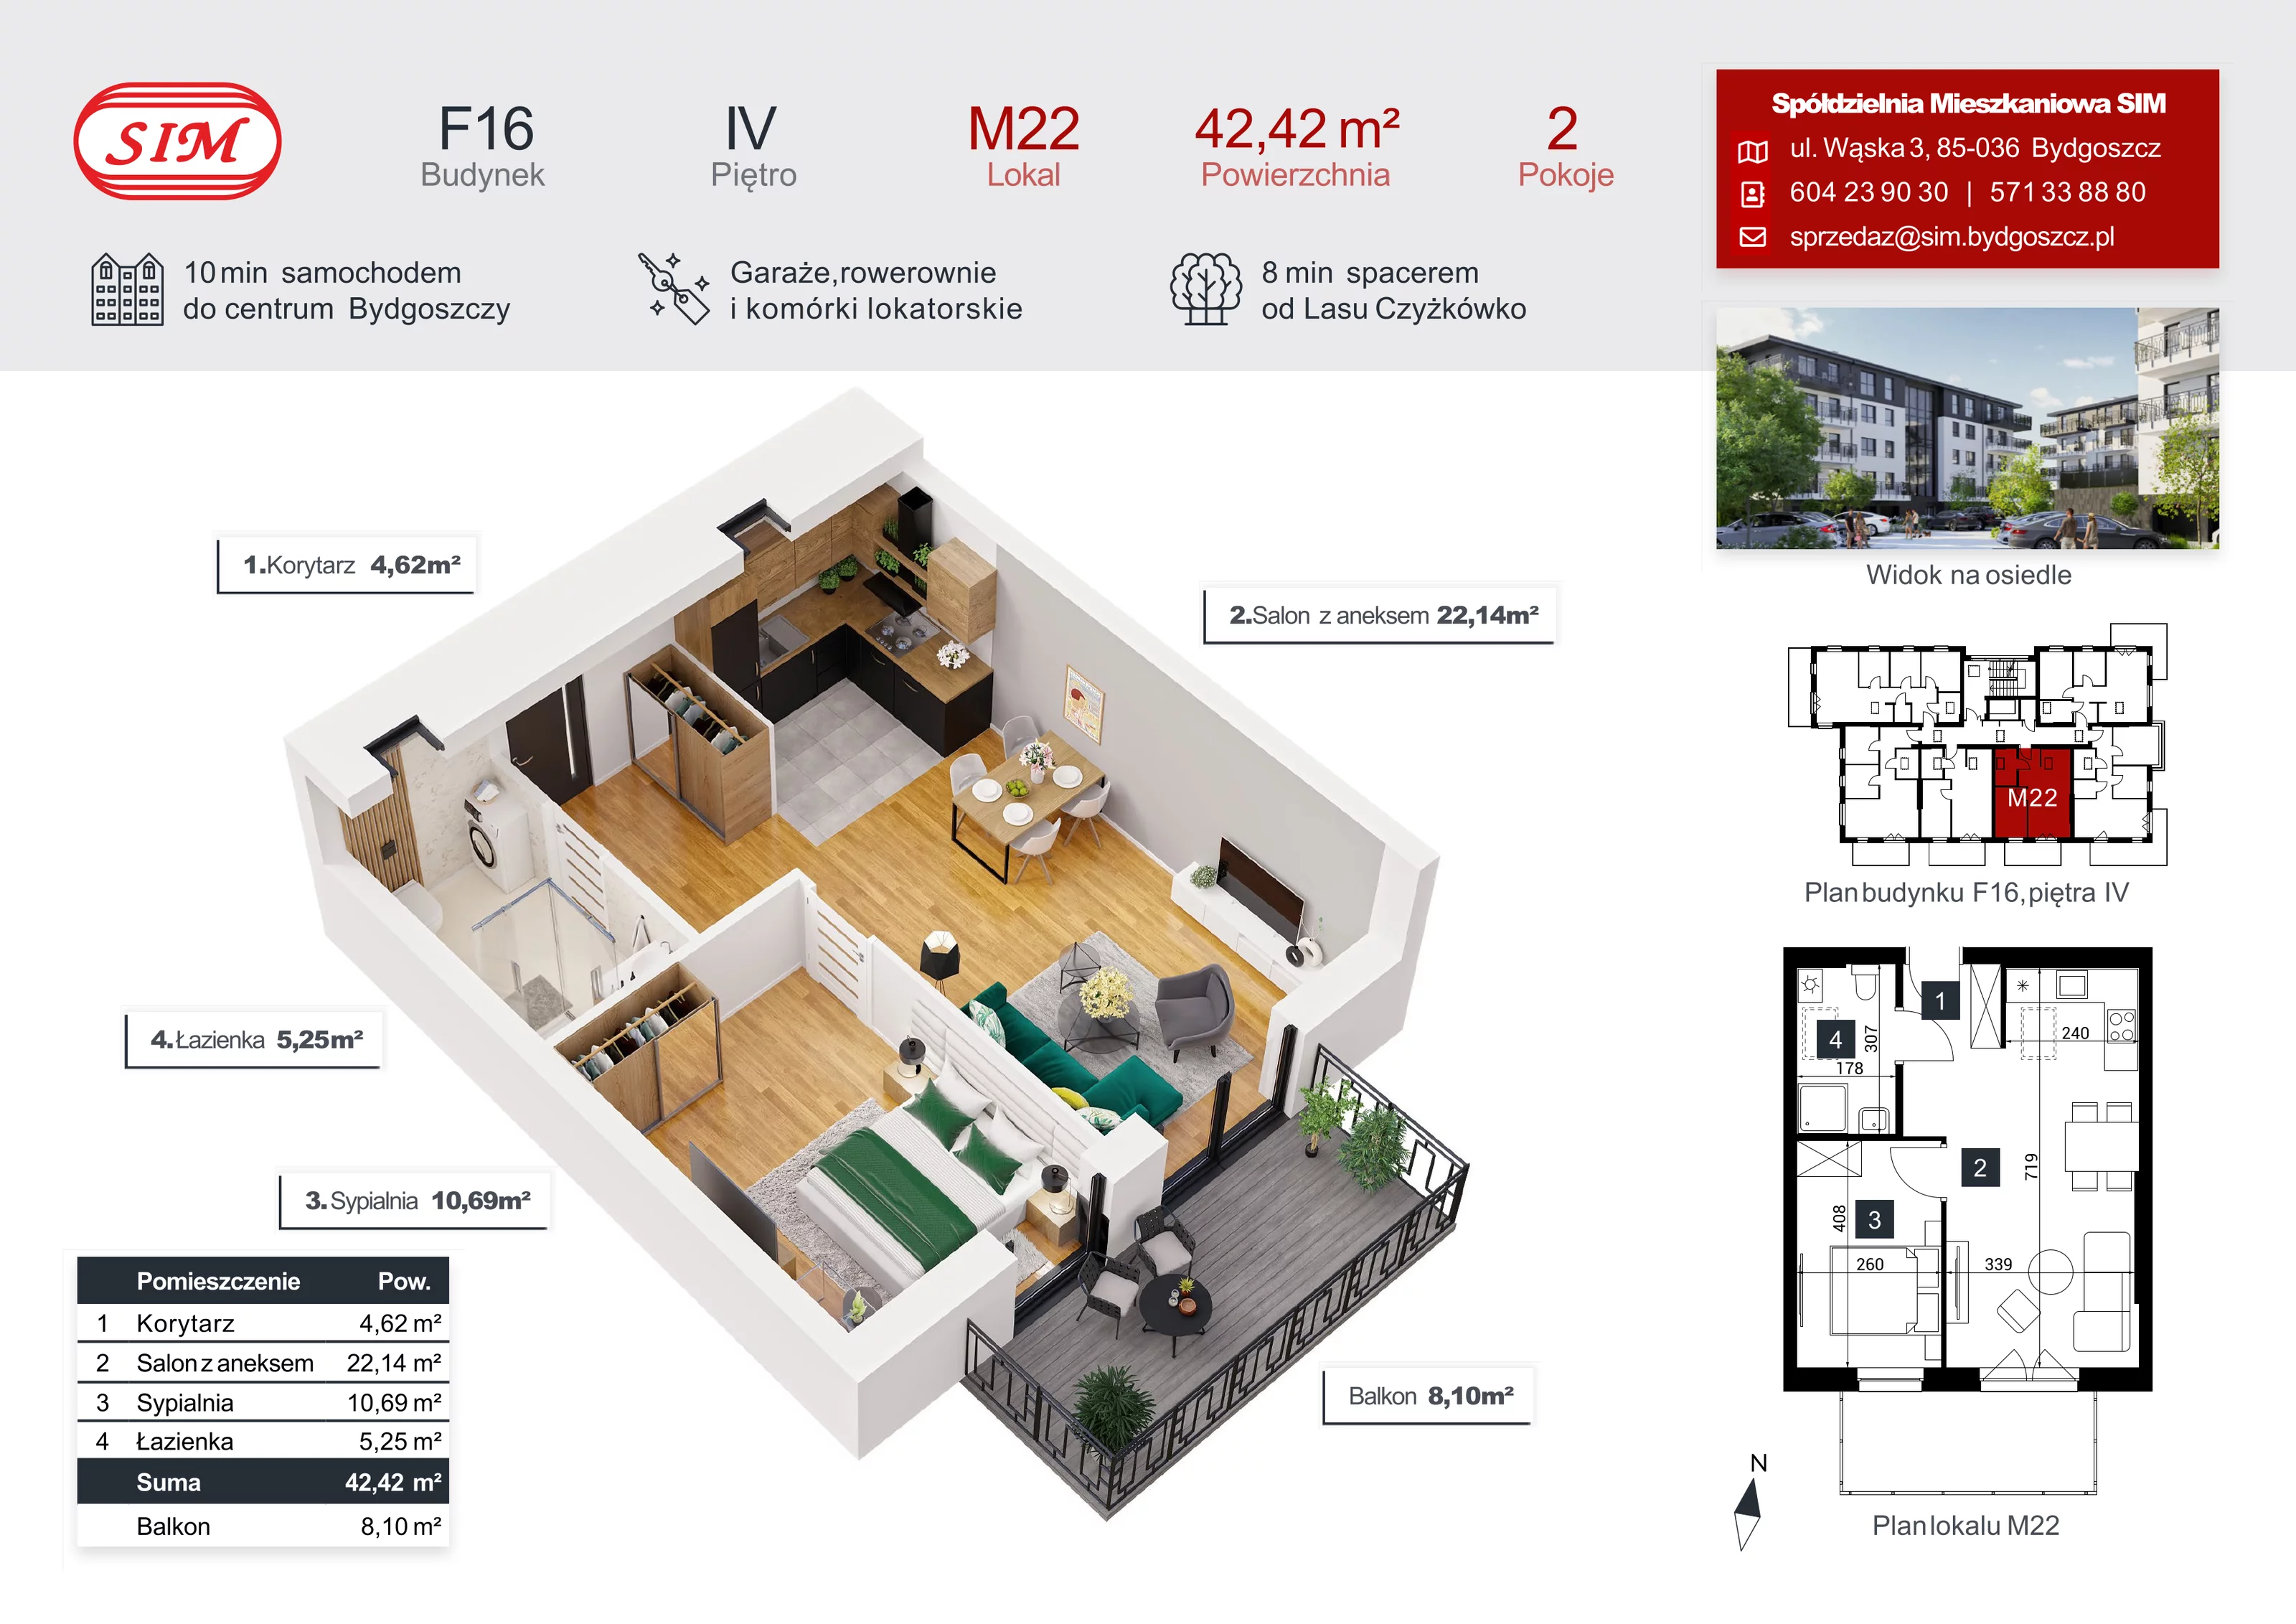 Mieszkanie 42,42 m², piętro 4, oferta nr F16-M22, Tęczowy Zakątek, Bydgoszcz, Czyżkówko, ul. Filtrowa